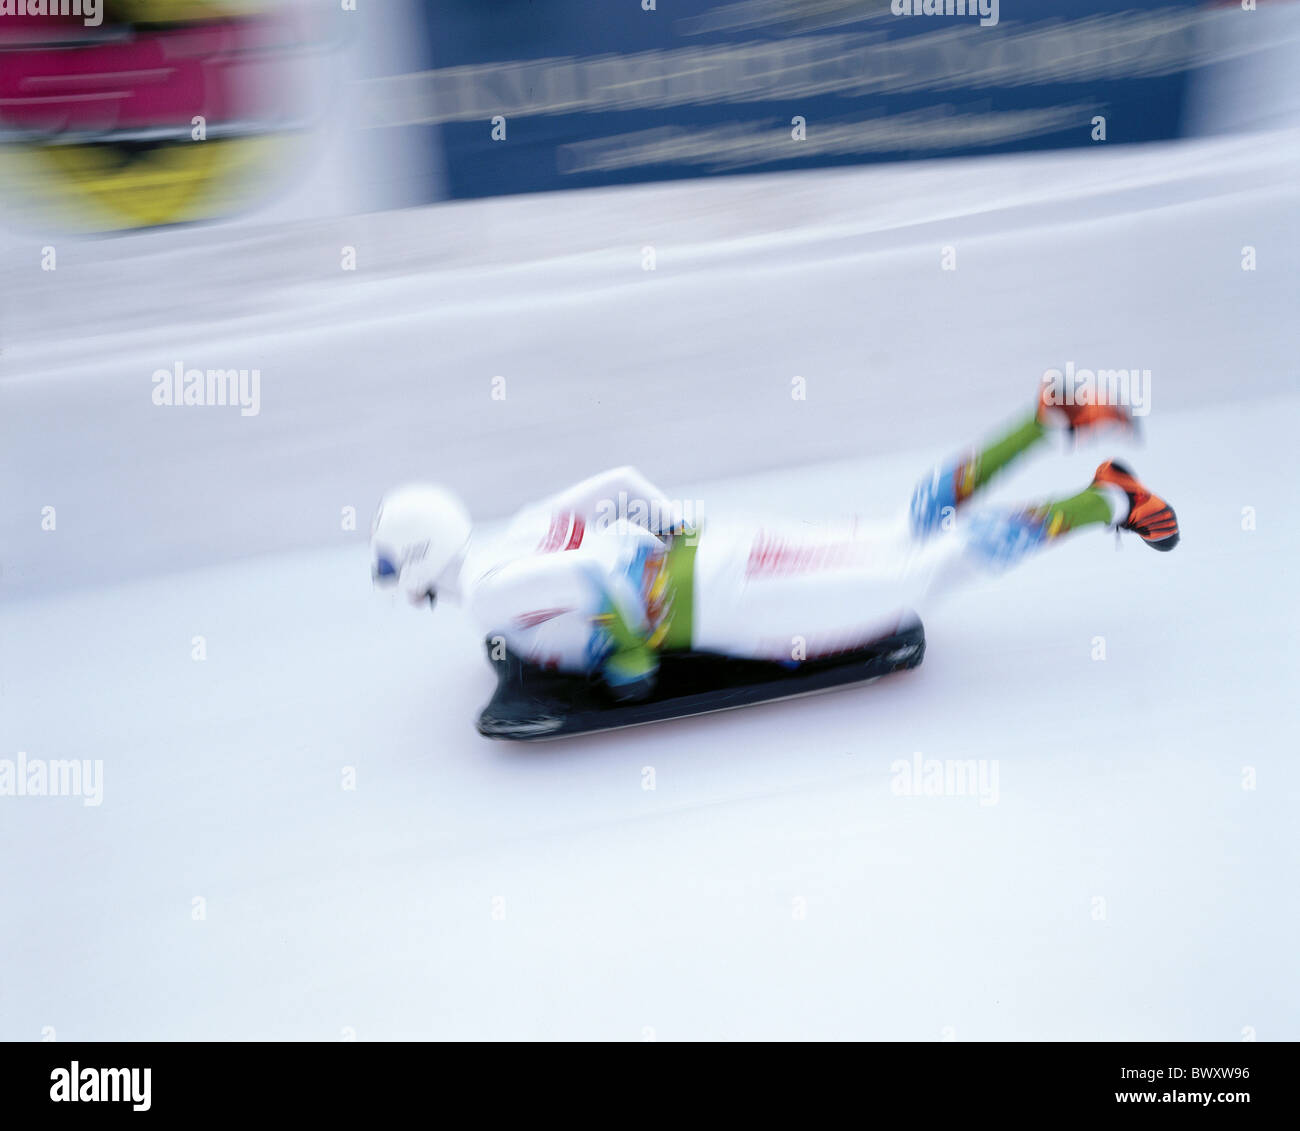 Le modèle ne libération individuelle sport luge Suisse Europe Skeleton sport sports d'hiver Banque D'Images